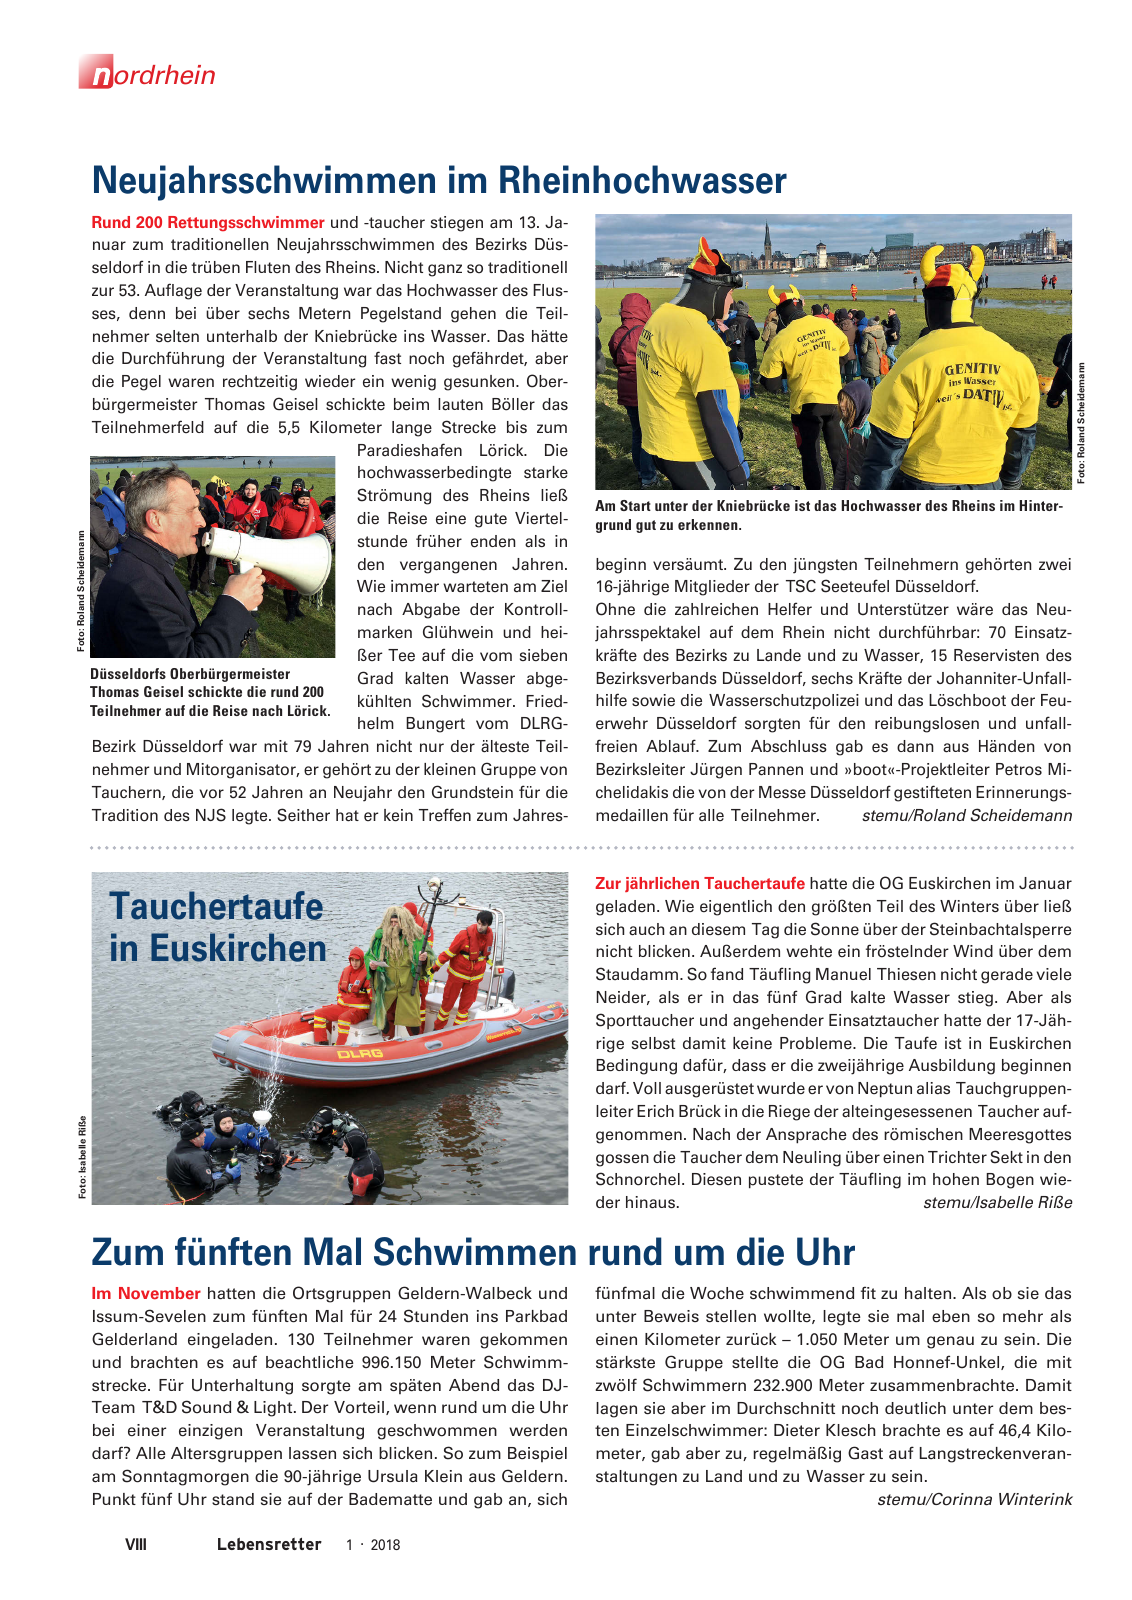 Vorschau Lebensretter 1/2018 - Regionalausgabe Nordrhein Seite 10